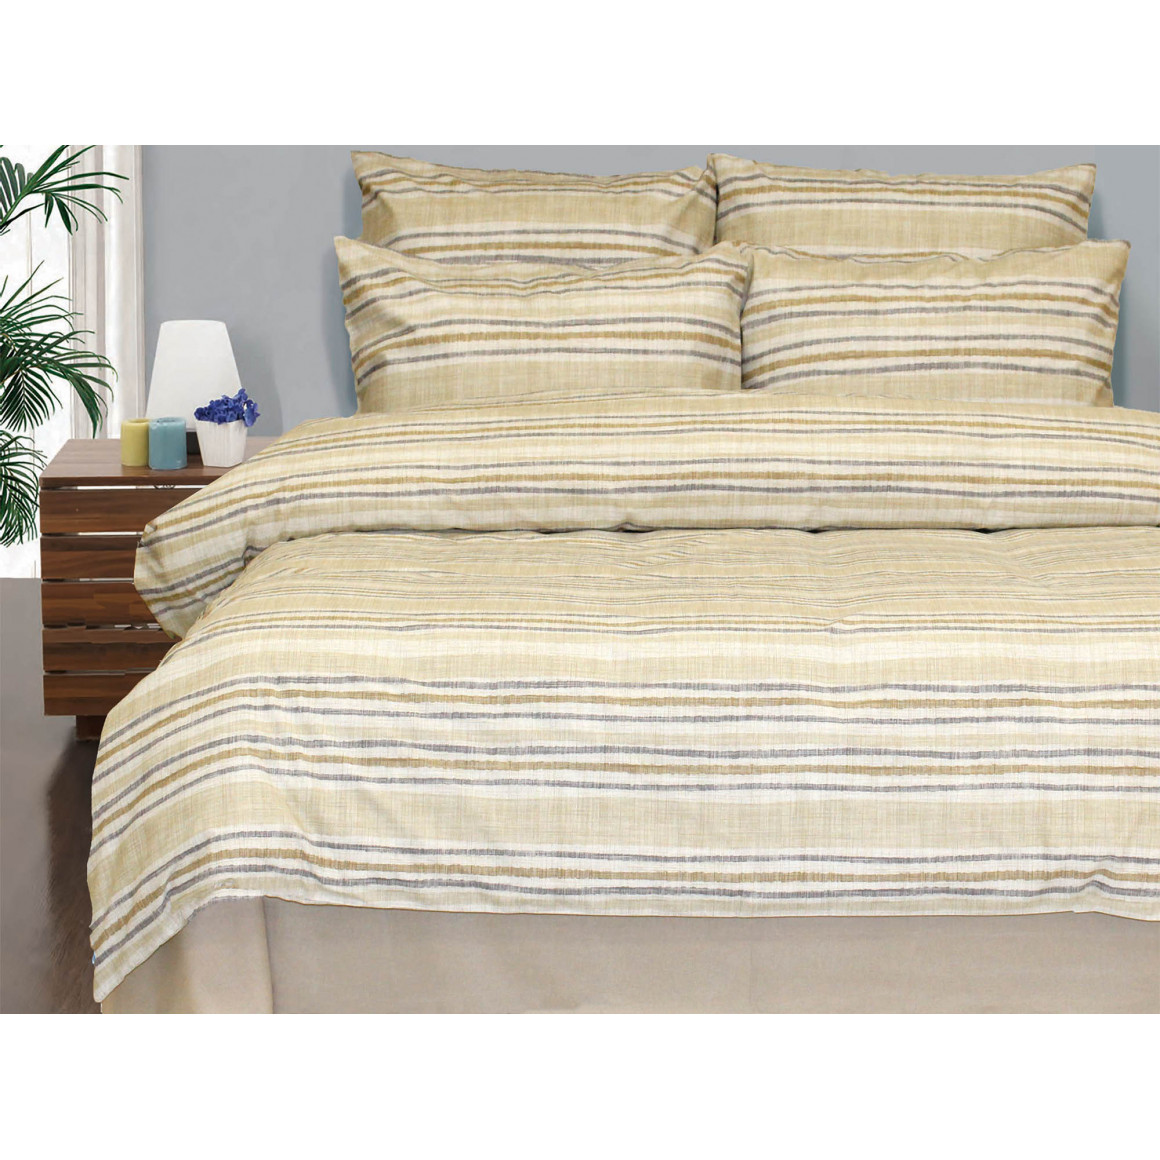 bed linen RESTFUL RFR 28103 V12 FA